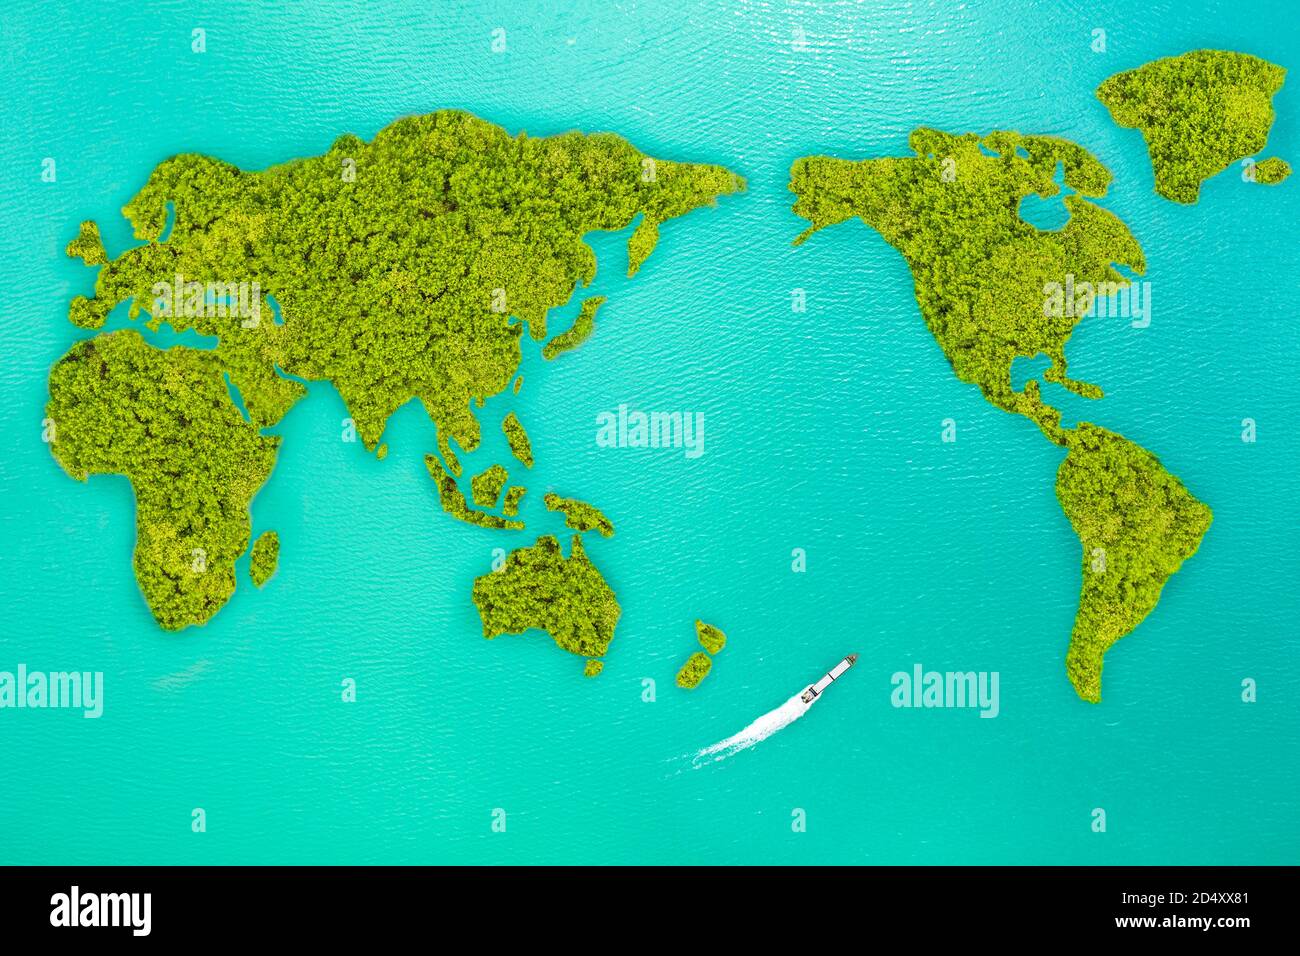 Luftaufnahme kleine grüne Insel, die Form sieht aus wie Welt Karte und Frachtschiff passieren Stockfoto